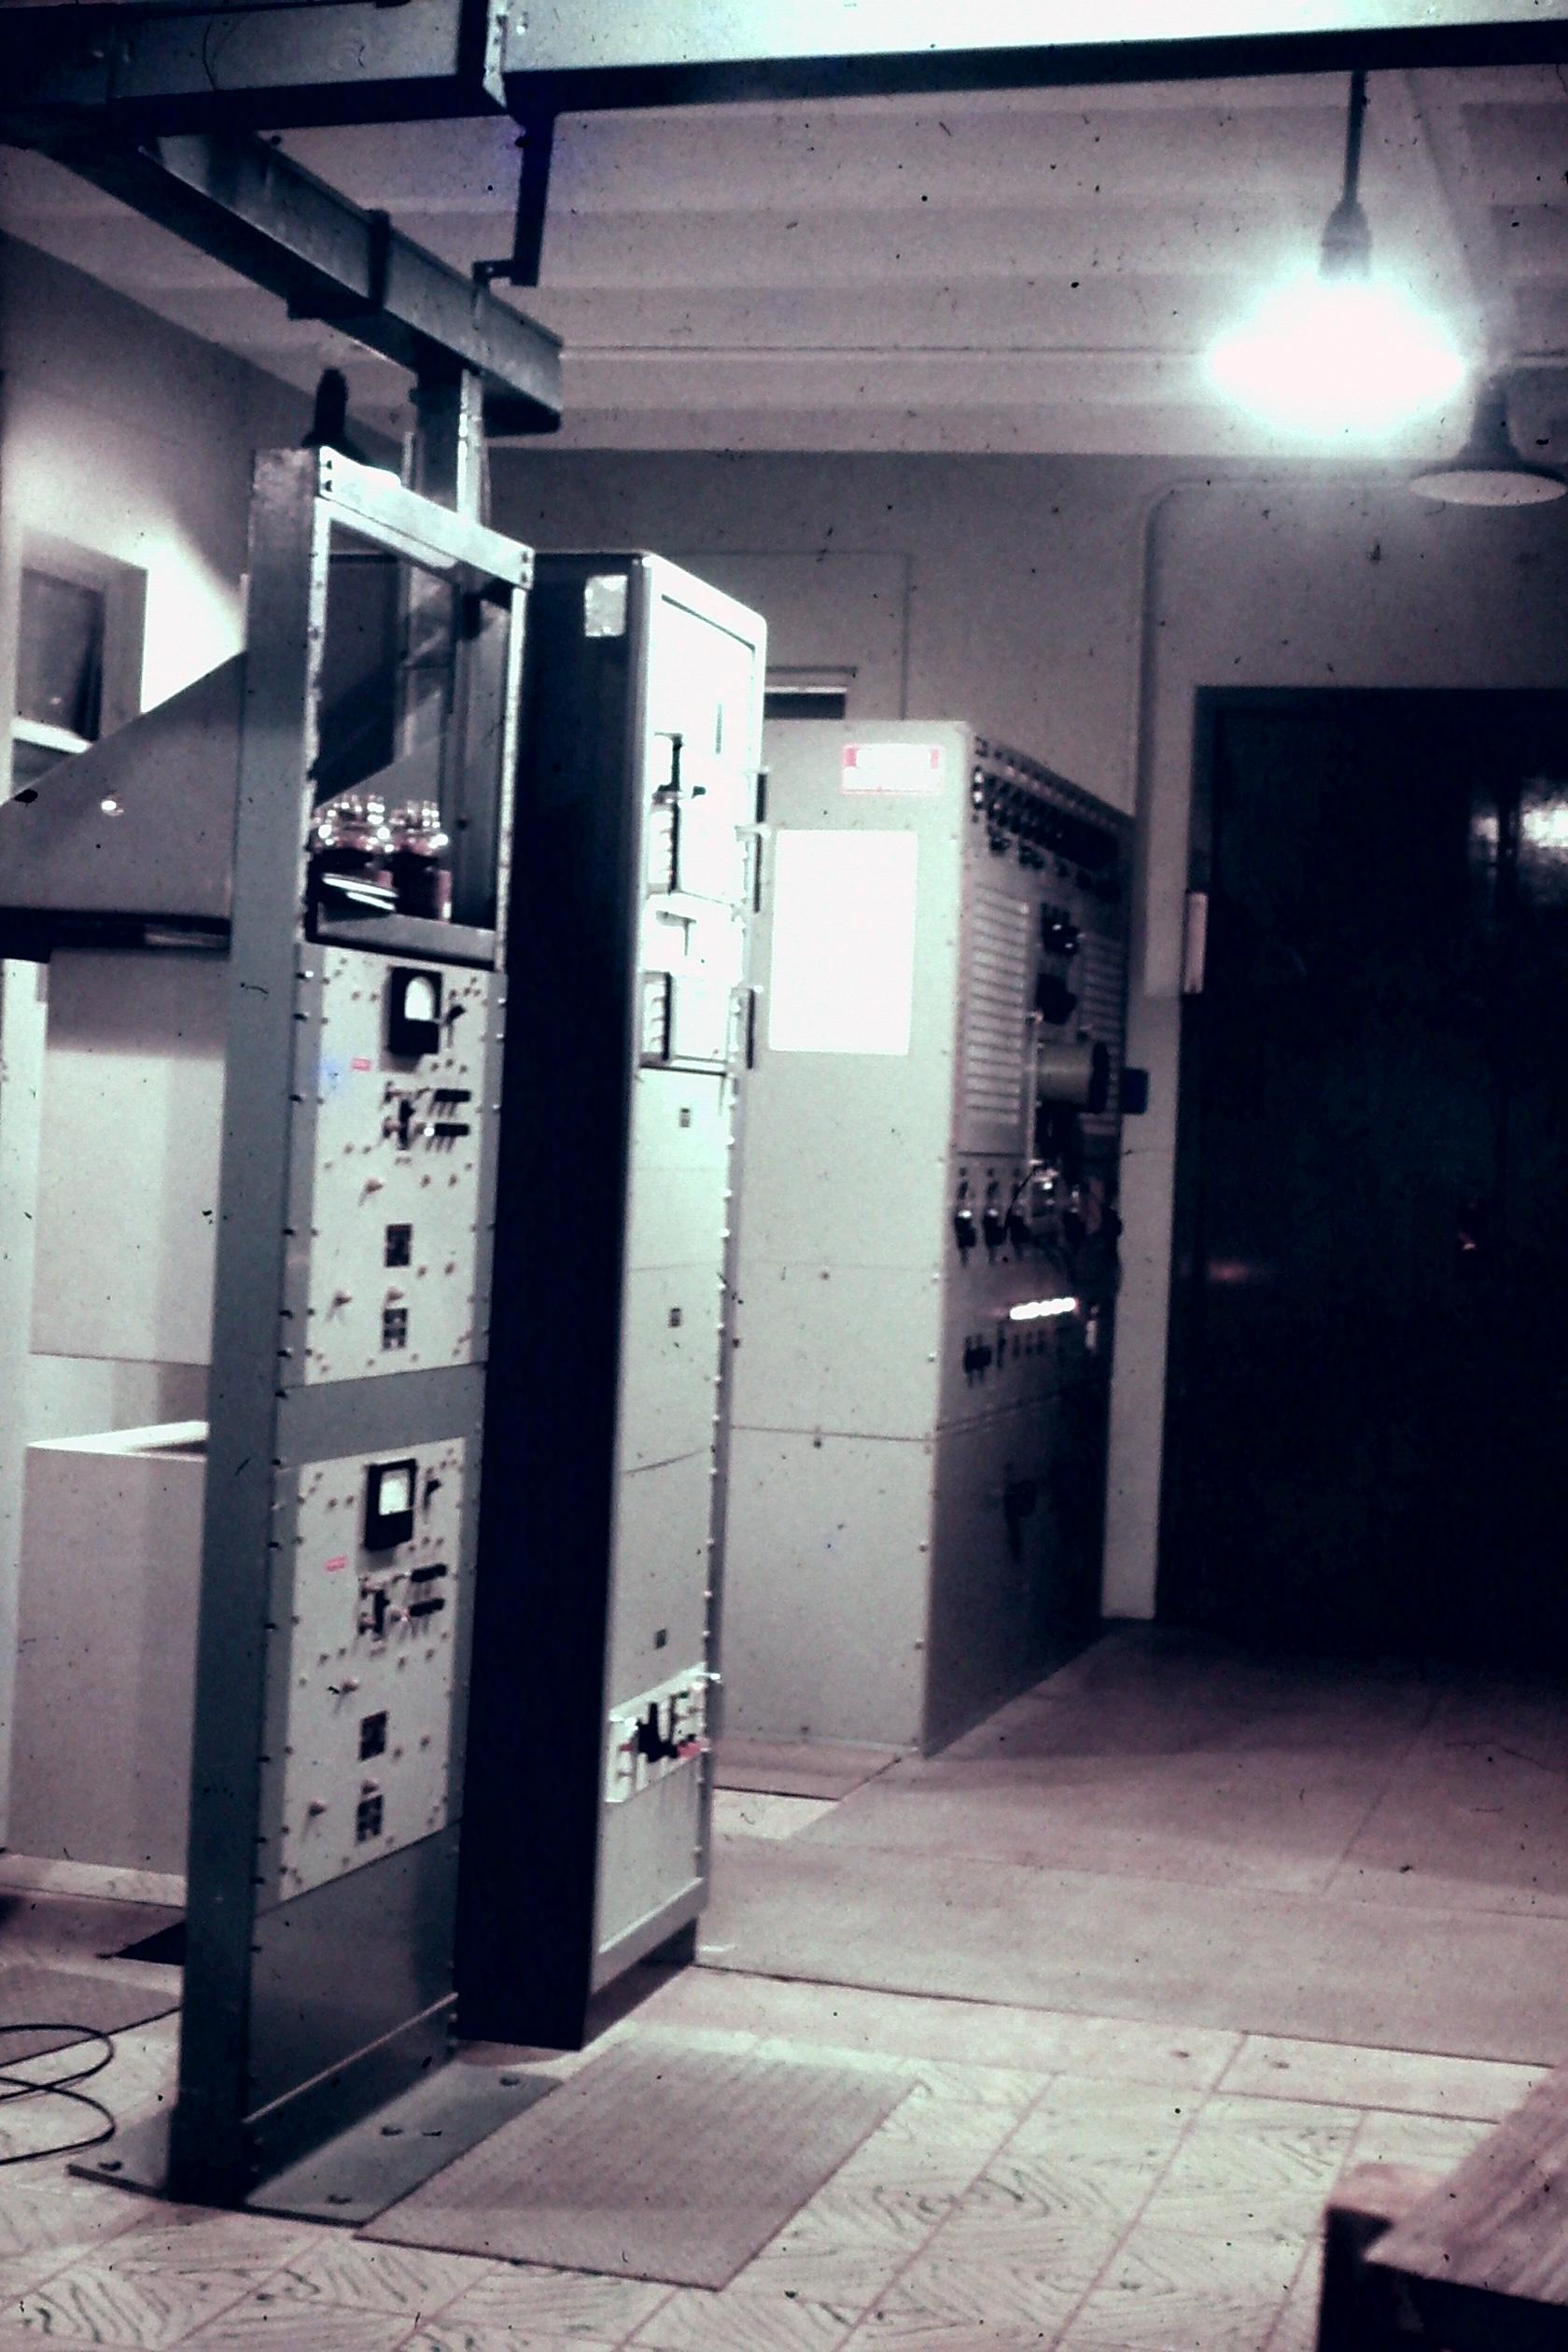 Loran A transmitter circa 1972